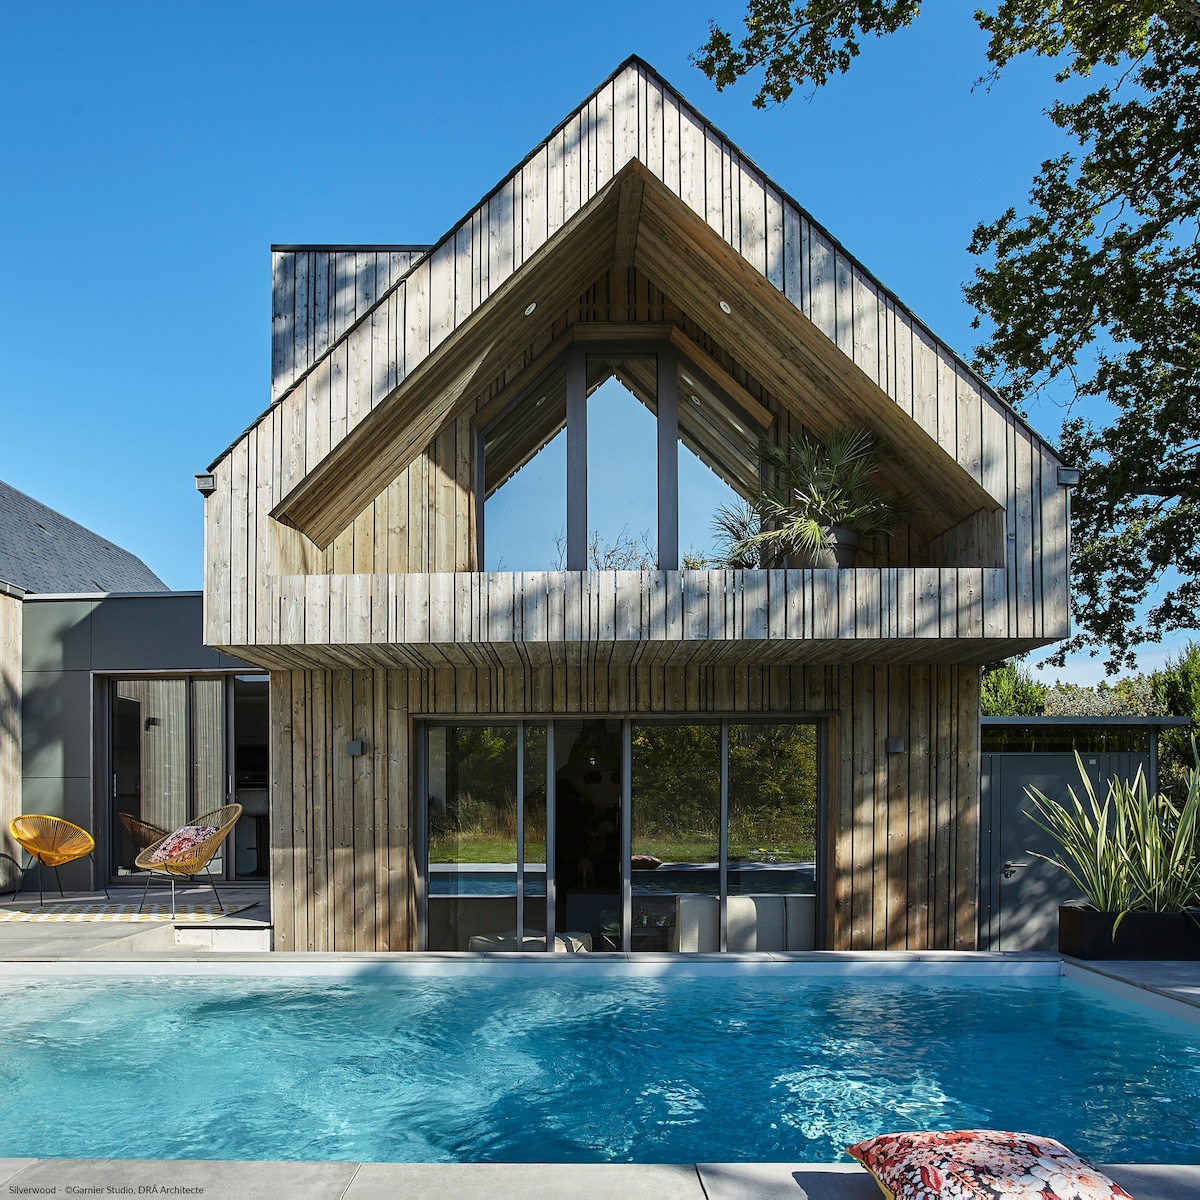 Charmante maison bois avec piscine.